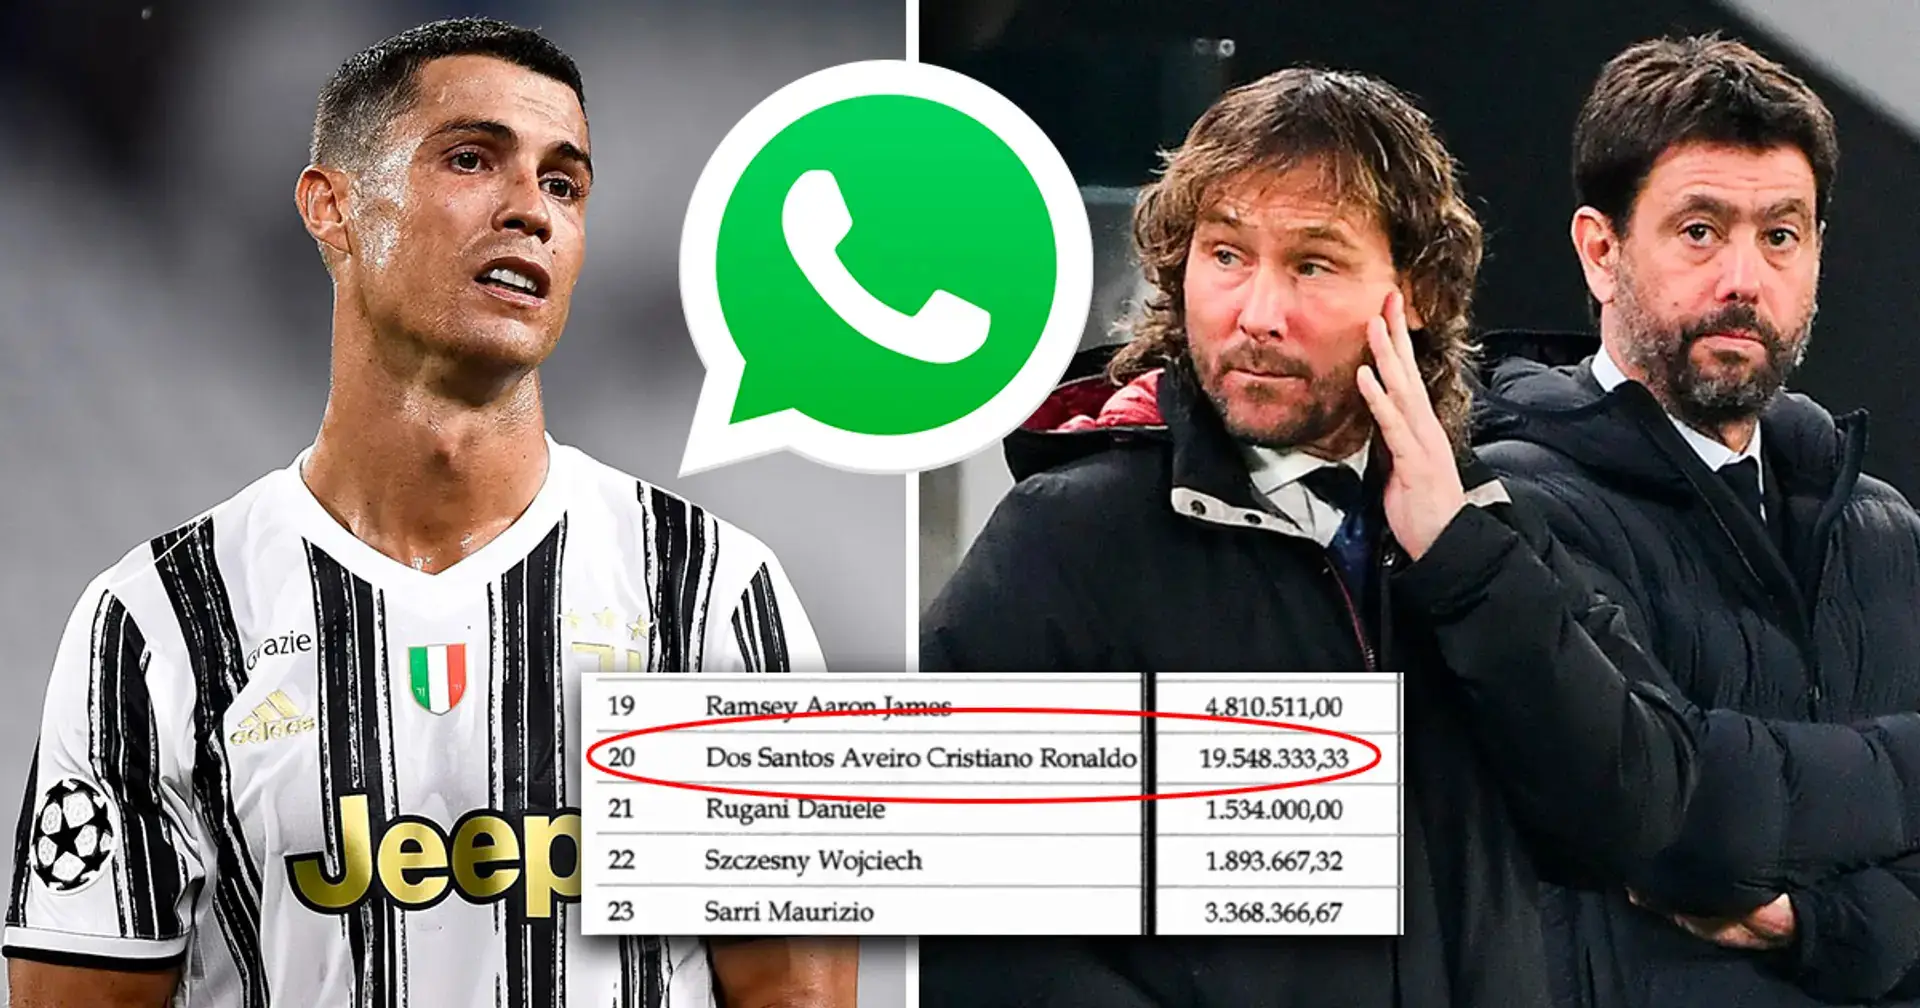 Cristiano Ronaldo podría ser suspendido por 30 días después de que se filtró el chat de WhatsApp de Juventus 